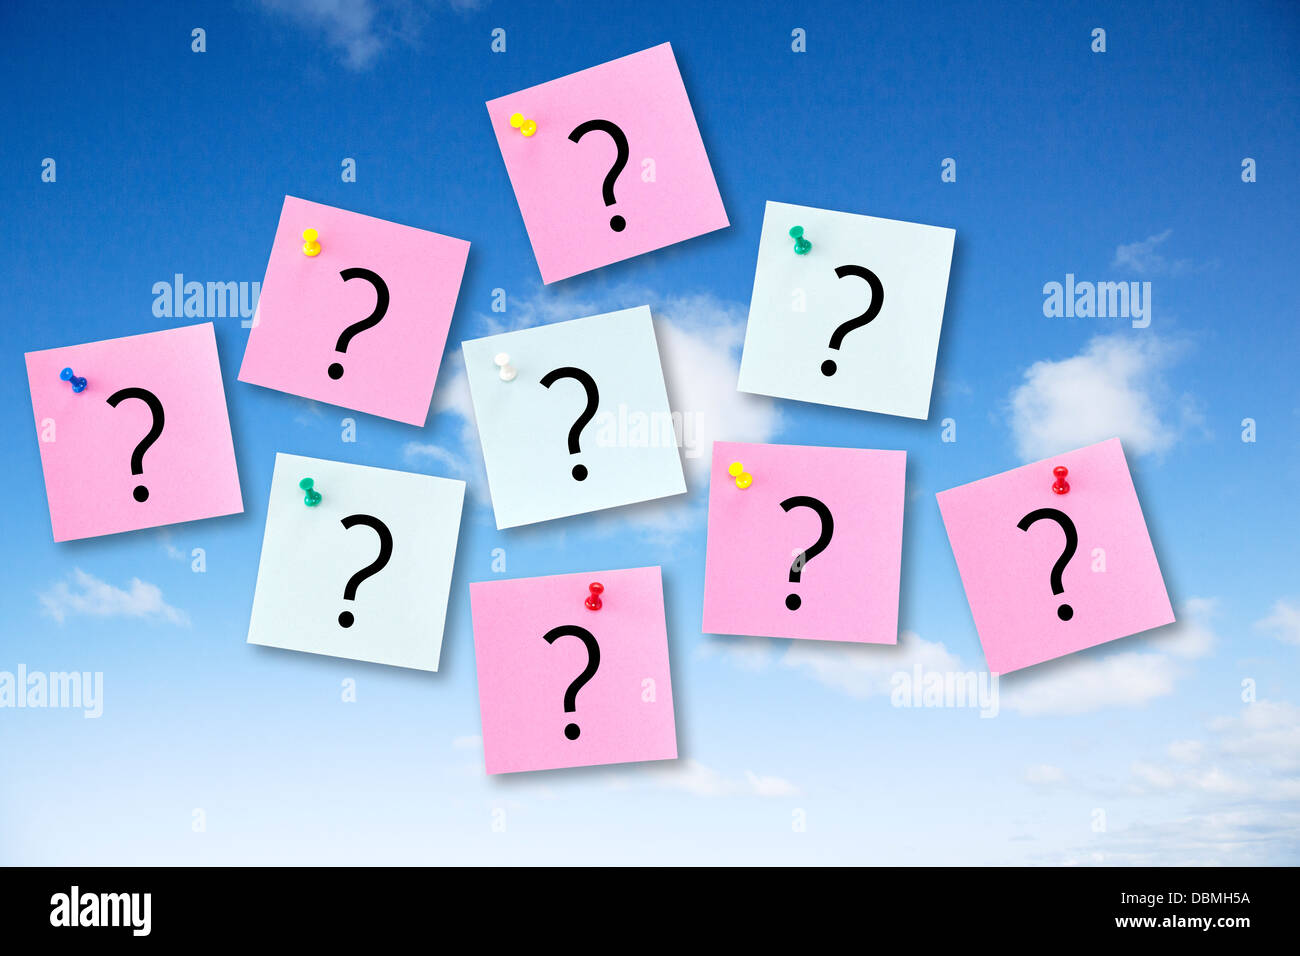 Question - Concept Note épinglée sur un ciel bleu avec des points d'interrogation. Banque D'Images